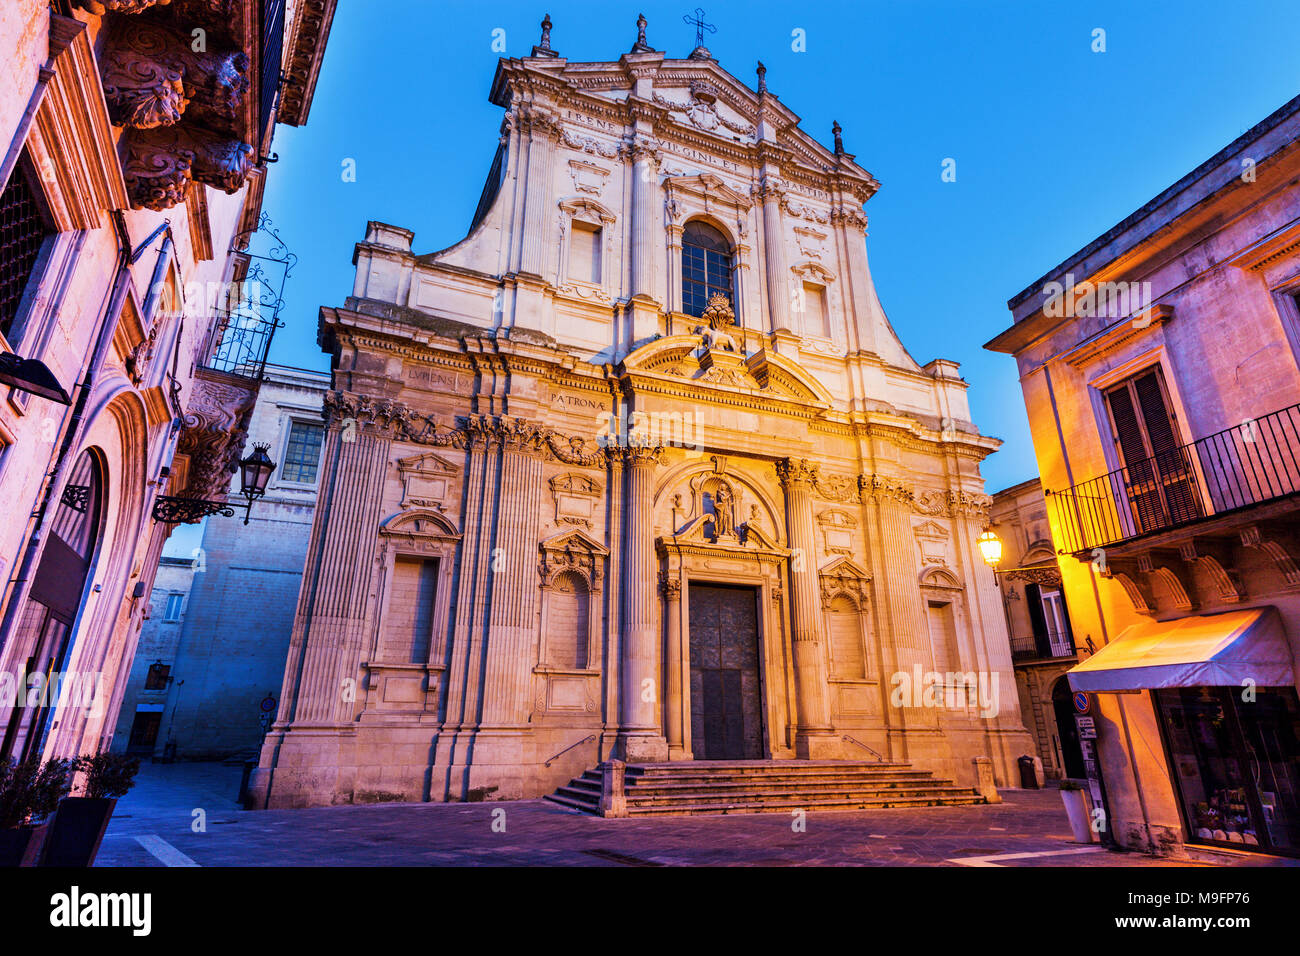 St Irene Church in Lecce. Lecce, Apulia, Italy Stock Photo